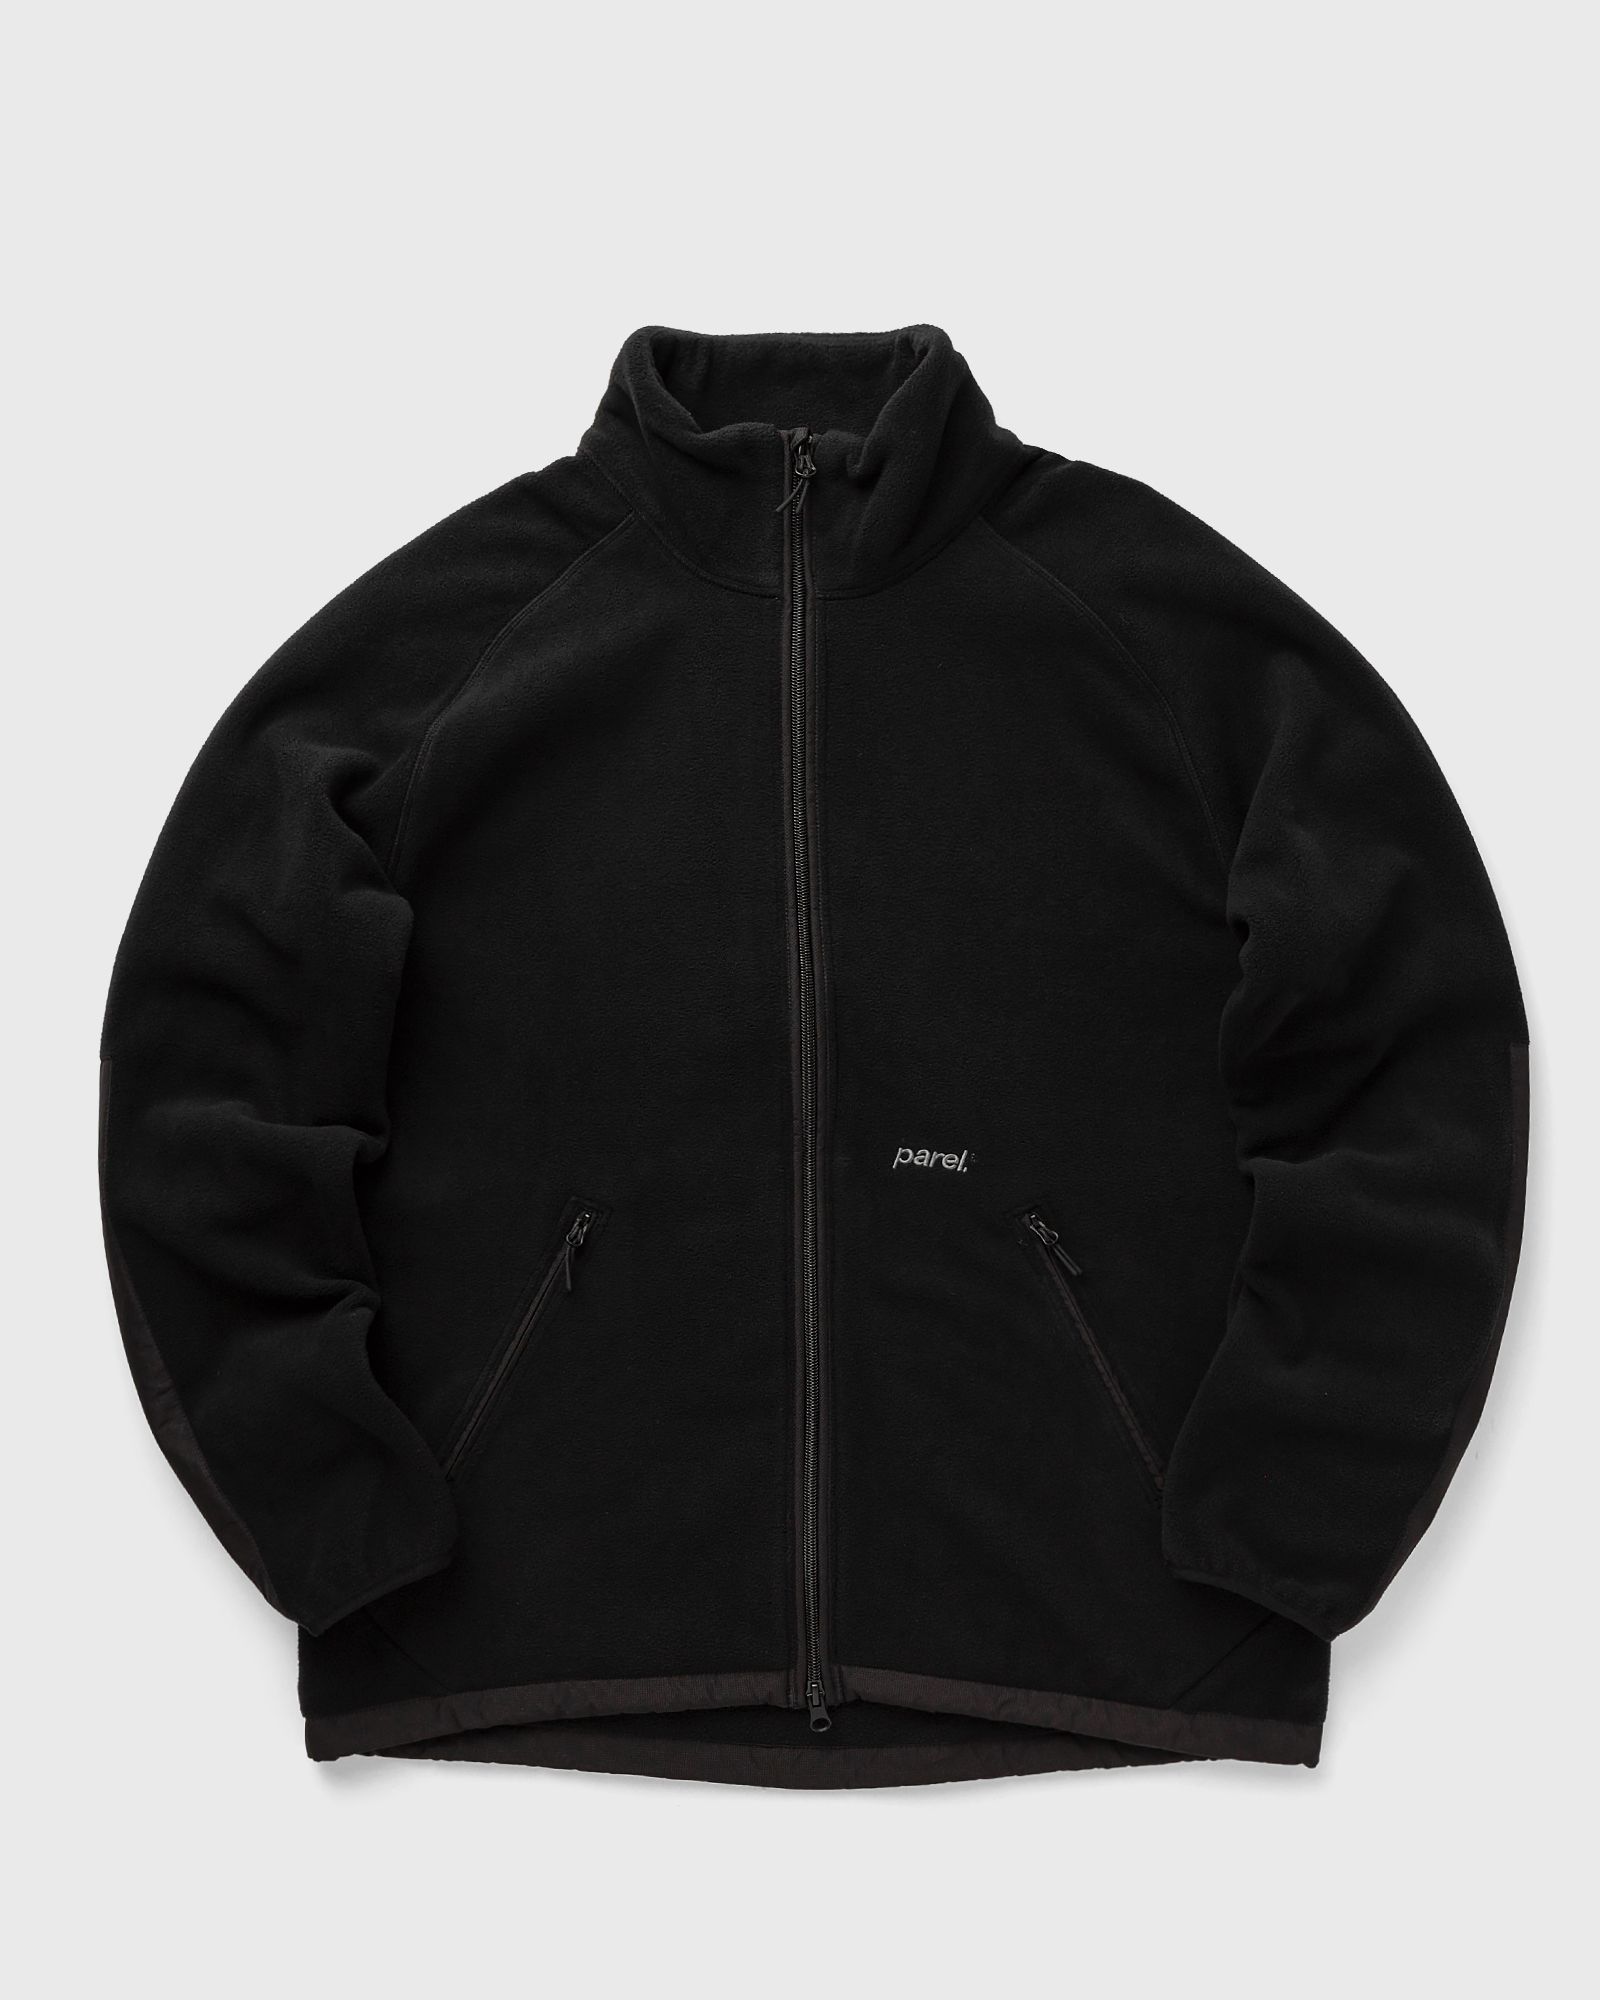 Parel studios - andes fleece men fleece jackets black in größe:l